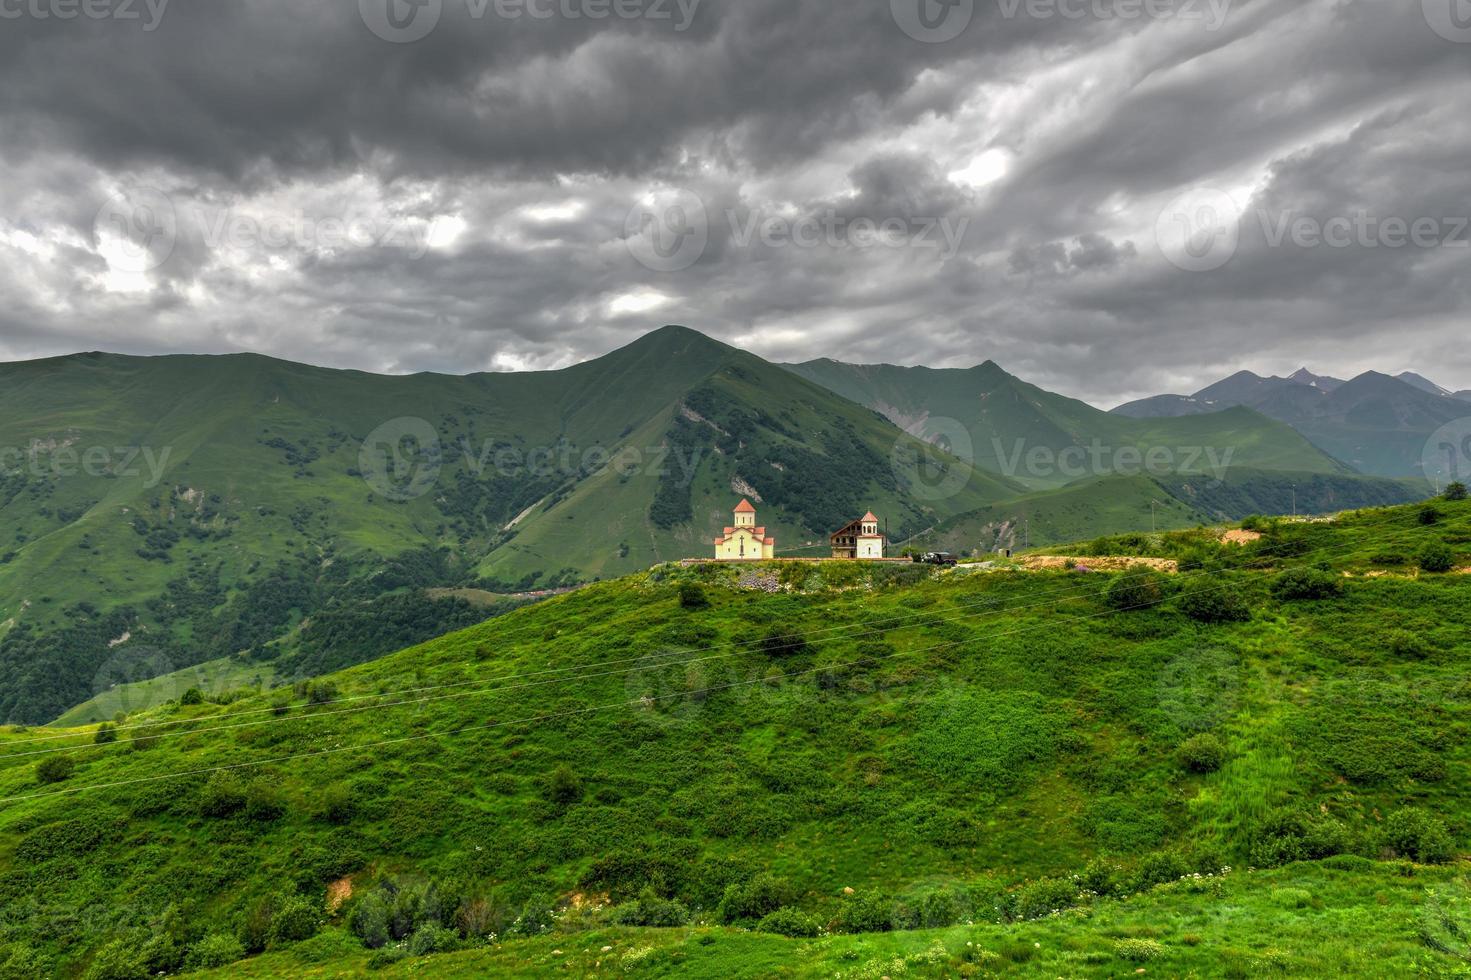 église amaglebis dans le paysage de montagne verdoyant de ganisi, géorgie. photo